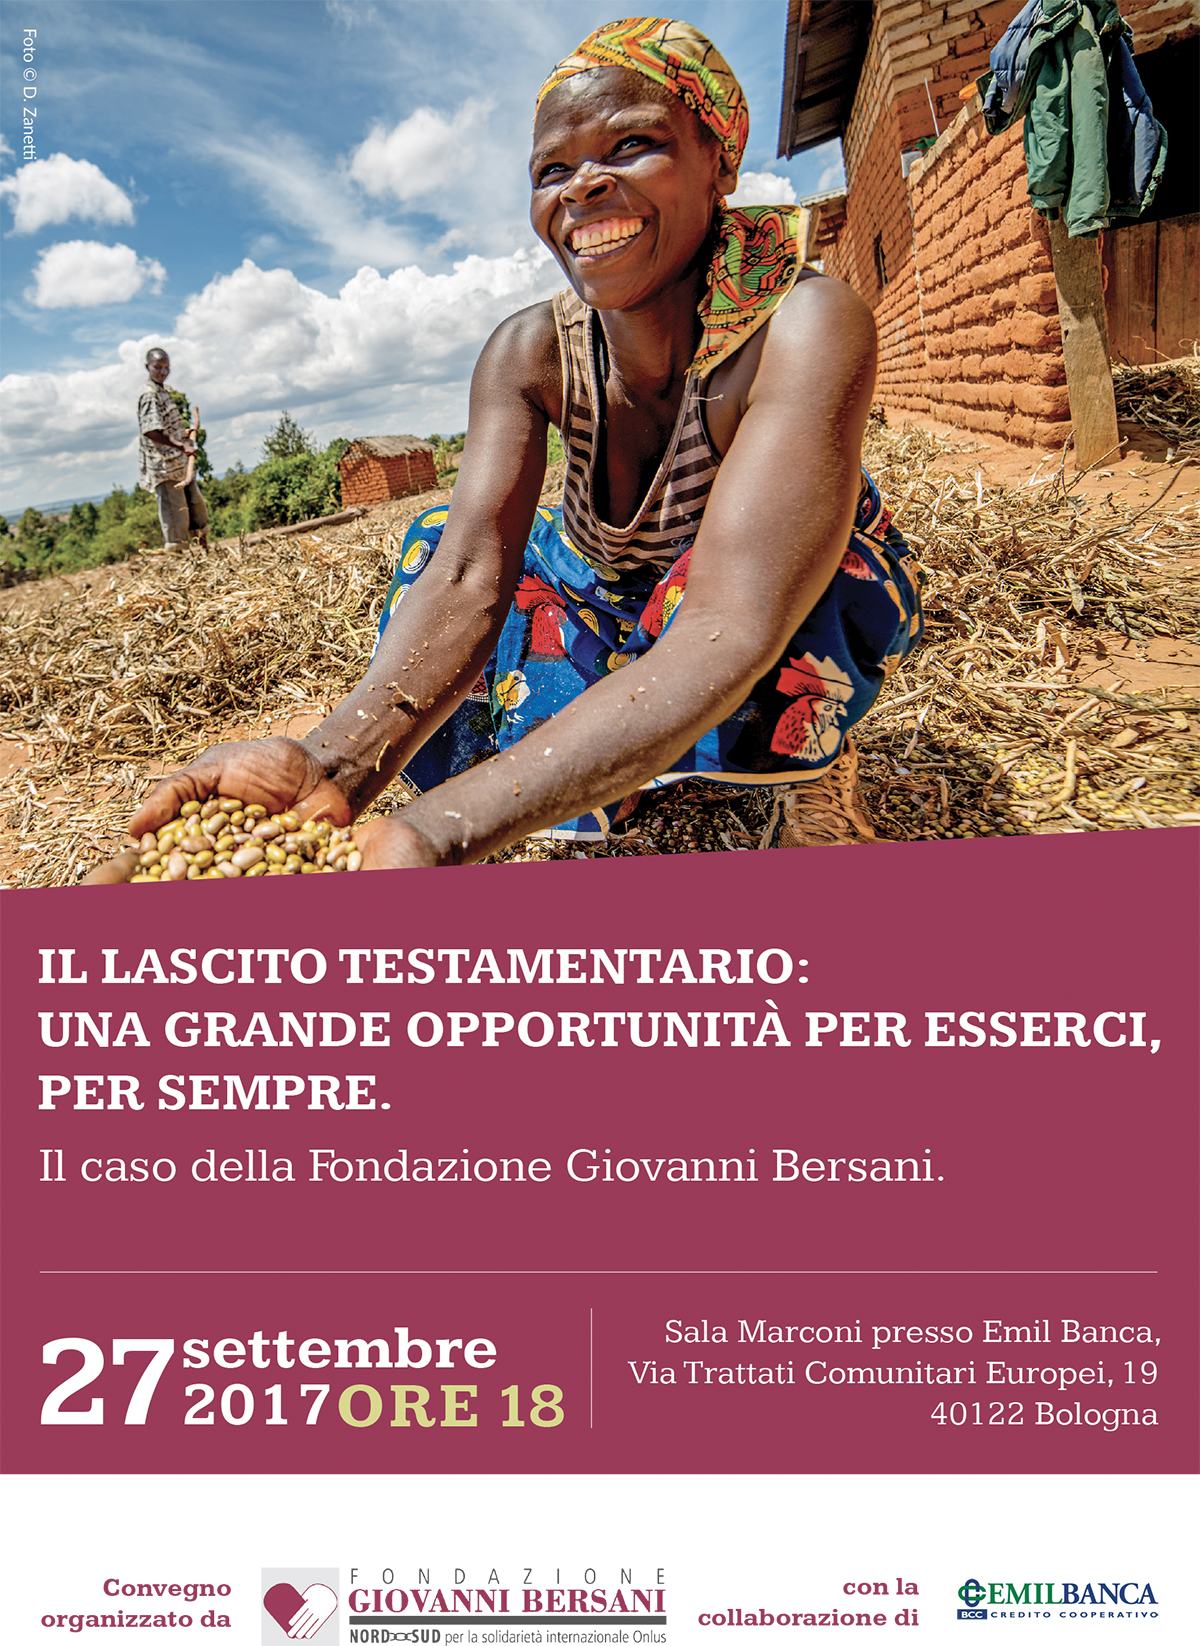 Convegno lasciti Fondazione Bersani